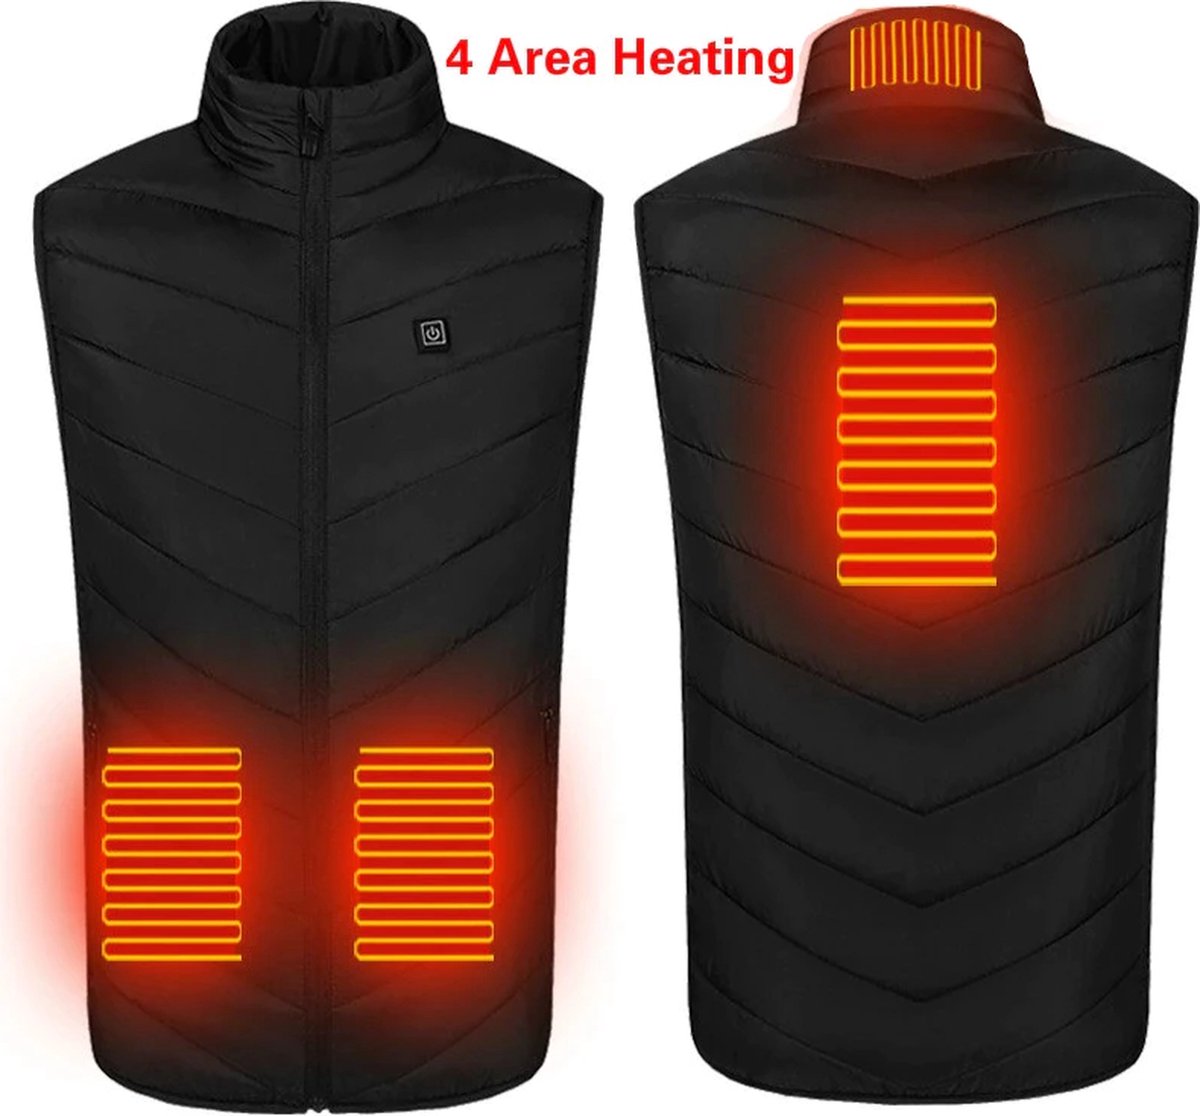 verwarmde bodywarmer - verwarmd vest - warmte vest - elektrisch verwarmd vest - verwarmde kleding - verwarmde jas - thermo vest - XS